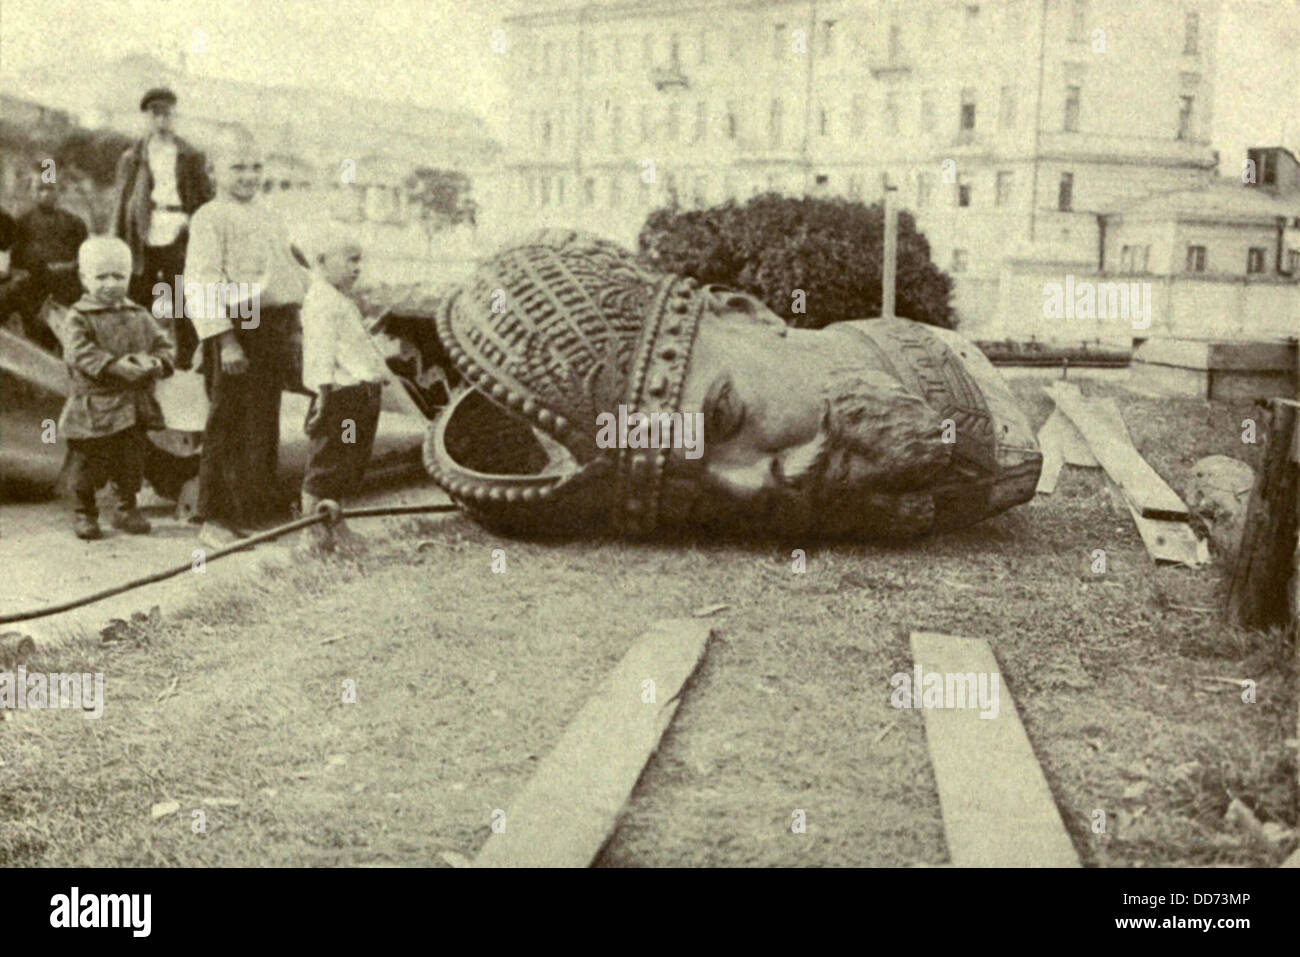 Bronze head of ruined statue of Czar Alexander III during Russian Revolution. 1917. (BSLOC 2013 4 204) Stock Photo